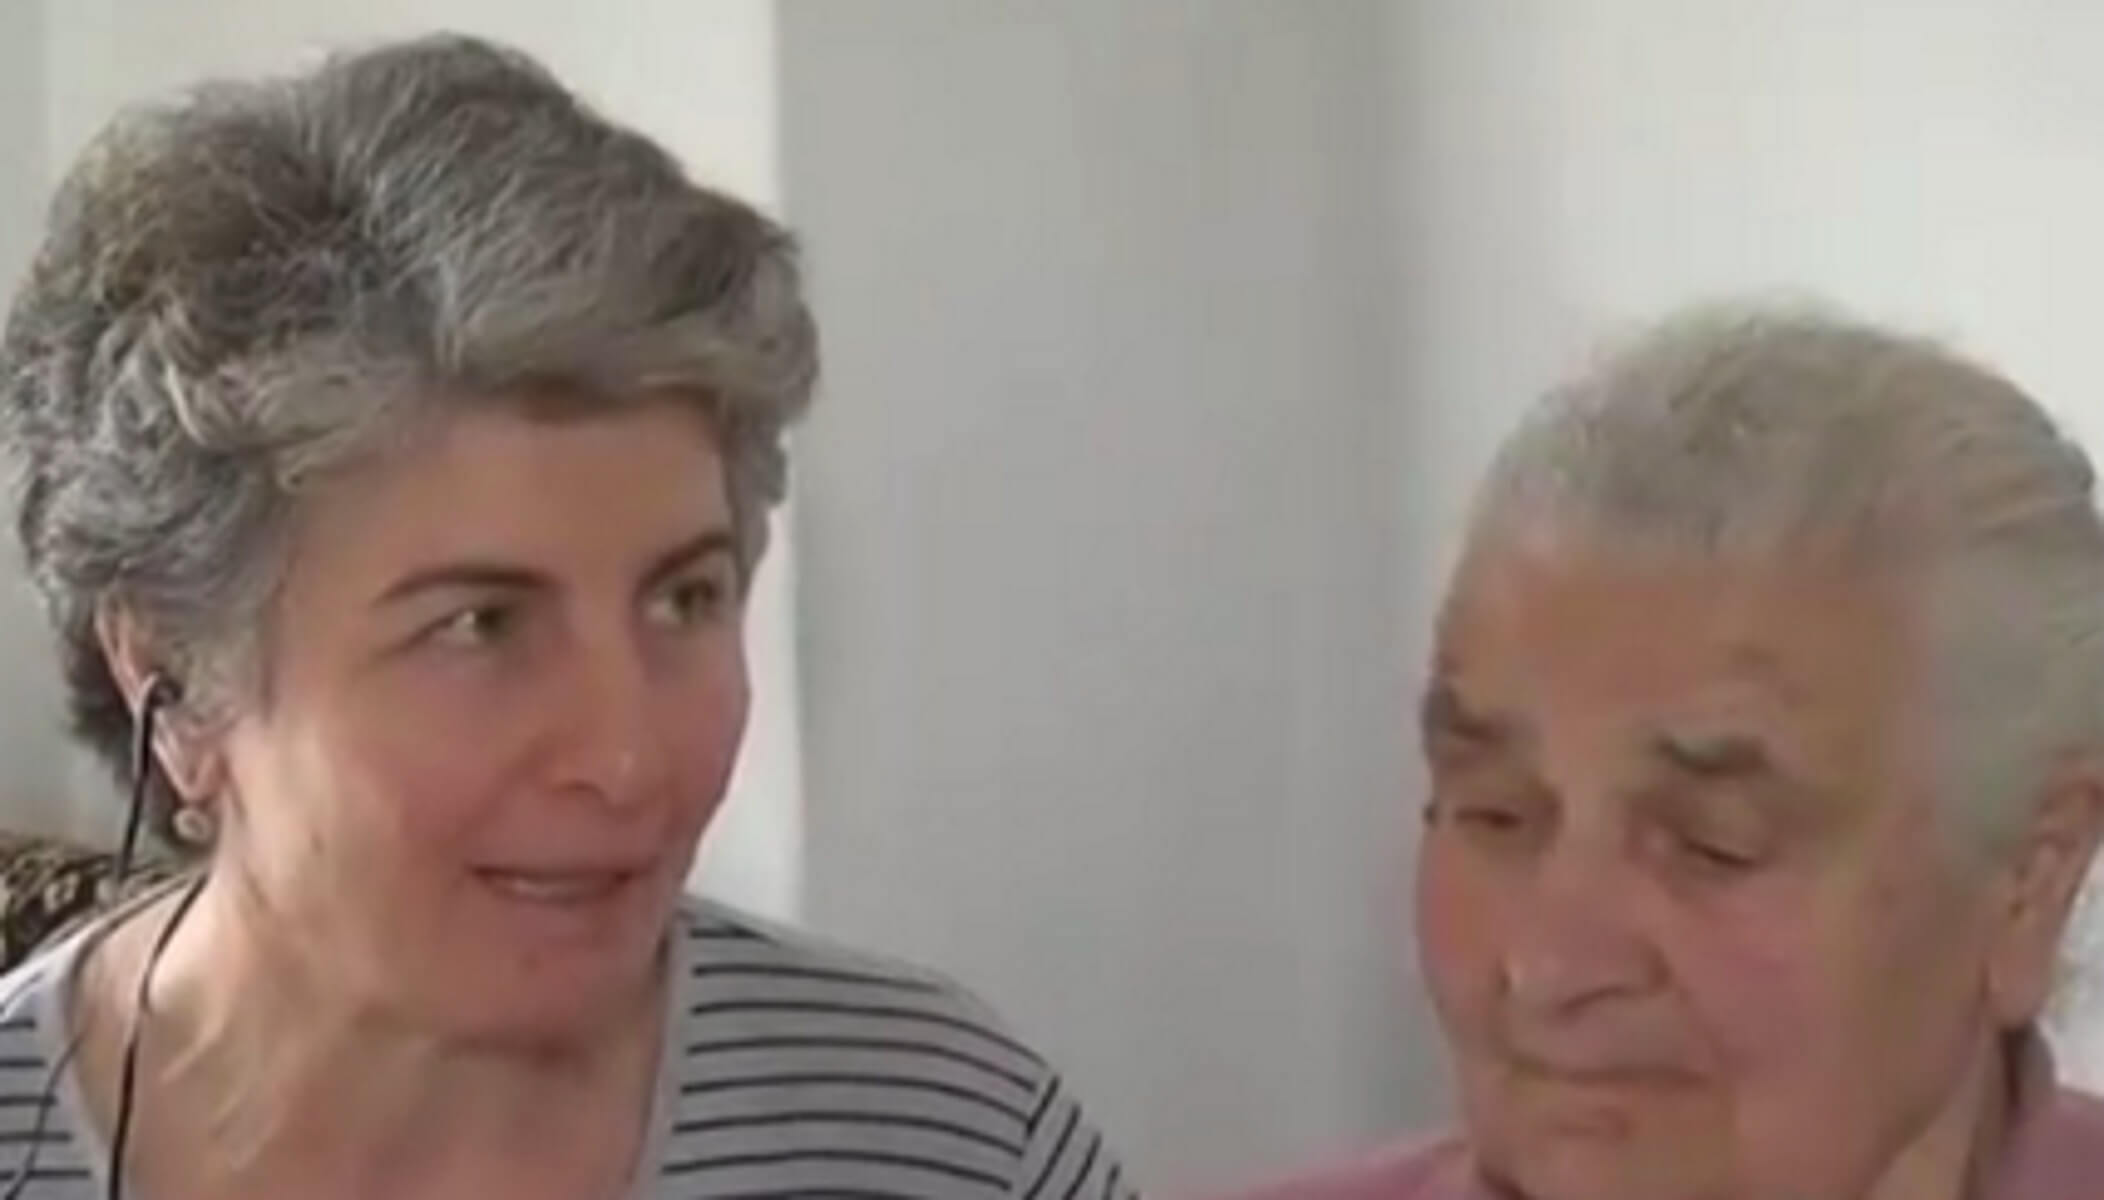 “Θέλω να πεθάνω χωρίς χρέος” – Η έκκληση της νέας “γιαγιάς με τα τερλίκια” – video